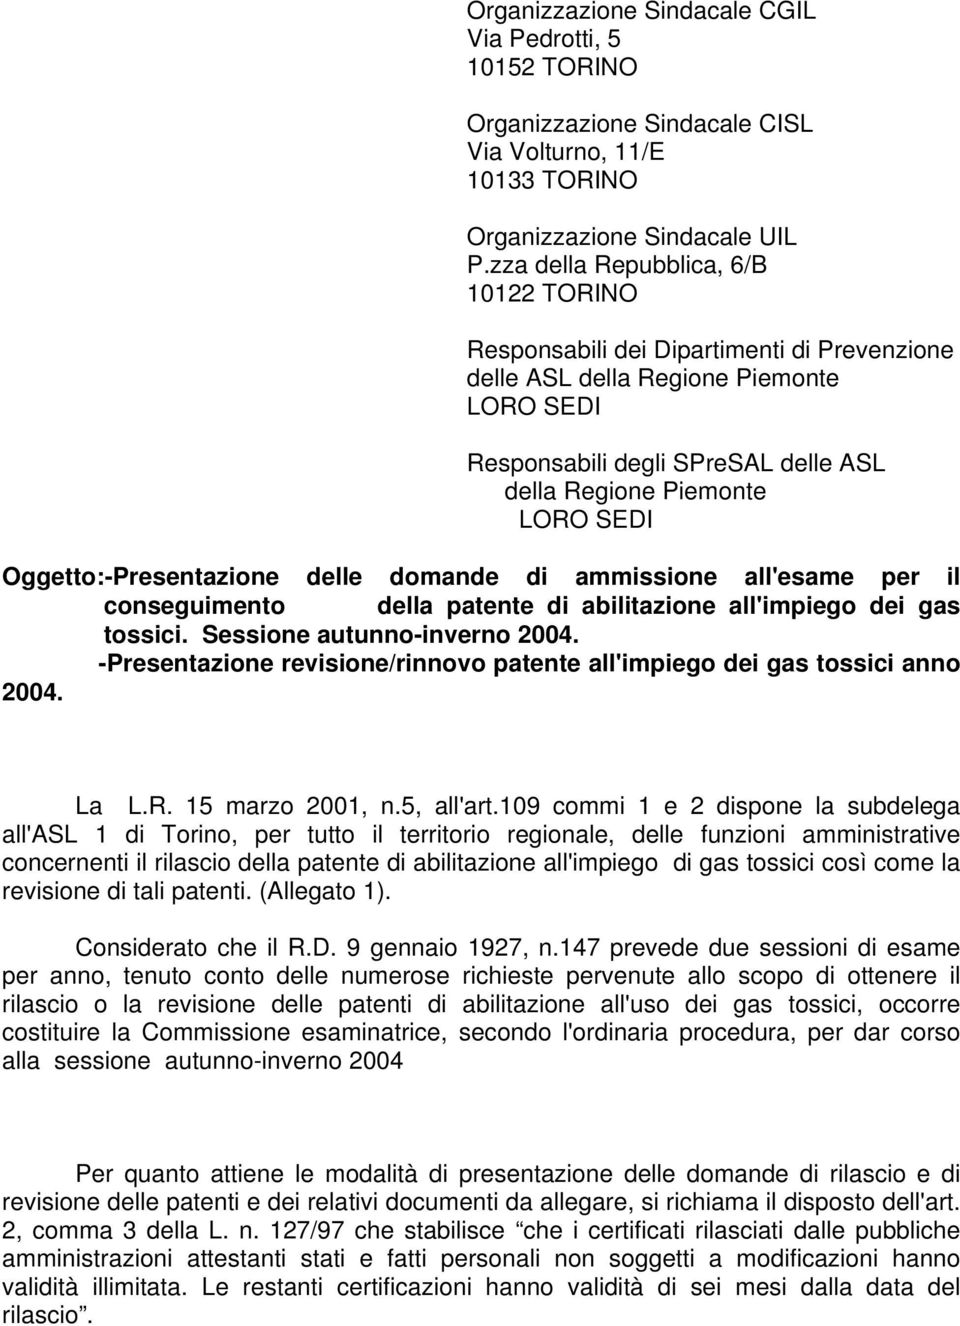 Oggetto:-Presentazione delle domande di ammissione all'esame per il conseguimento della patente di abilitazione all'impiego dei gas tossici. Sessione autunno-inverno 2004.